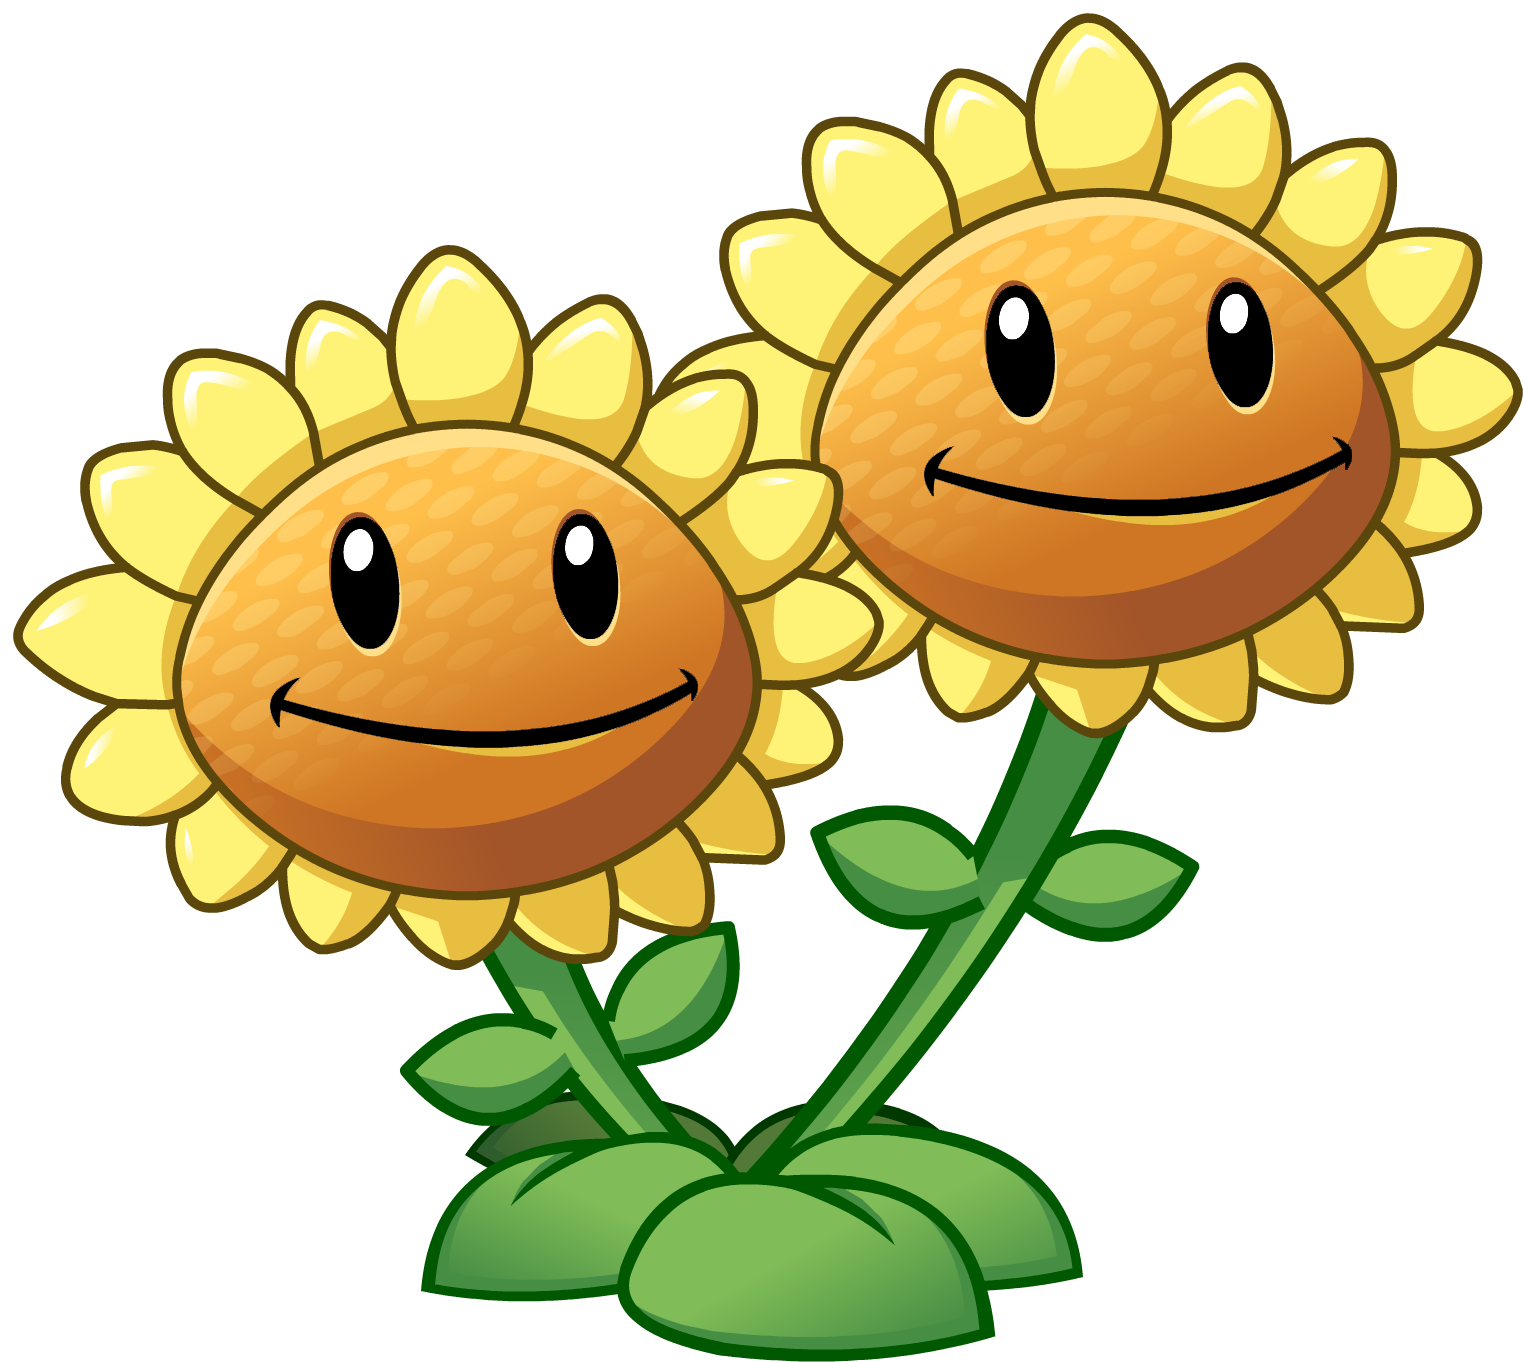 clipart smile sunflower